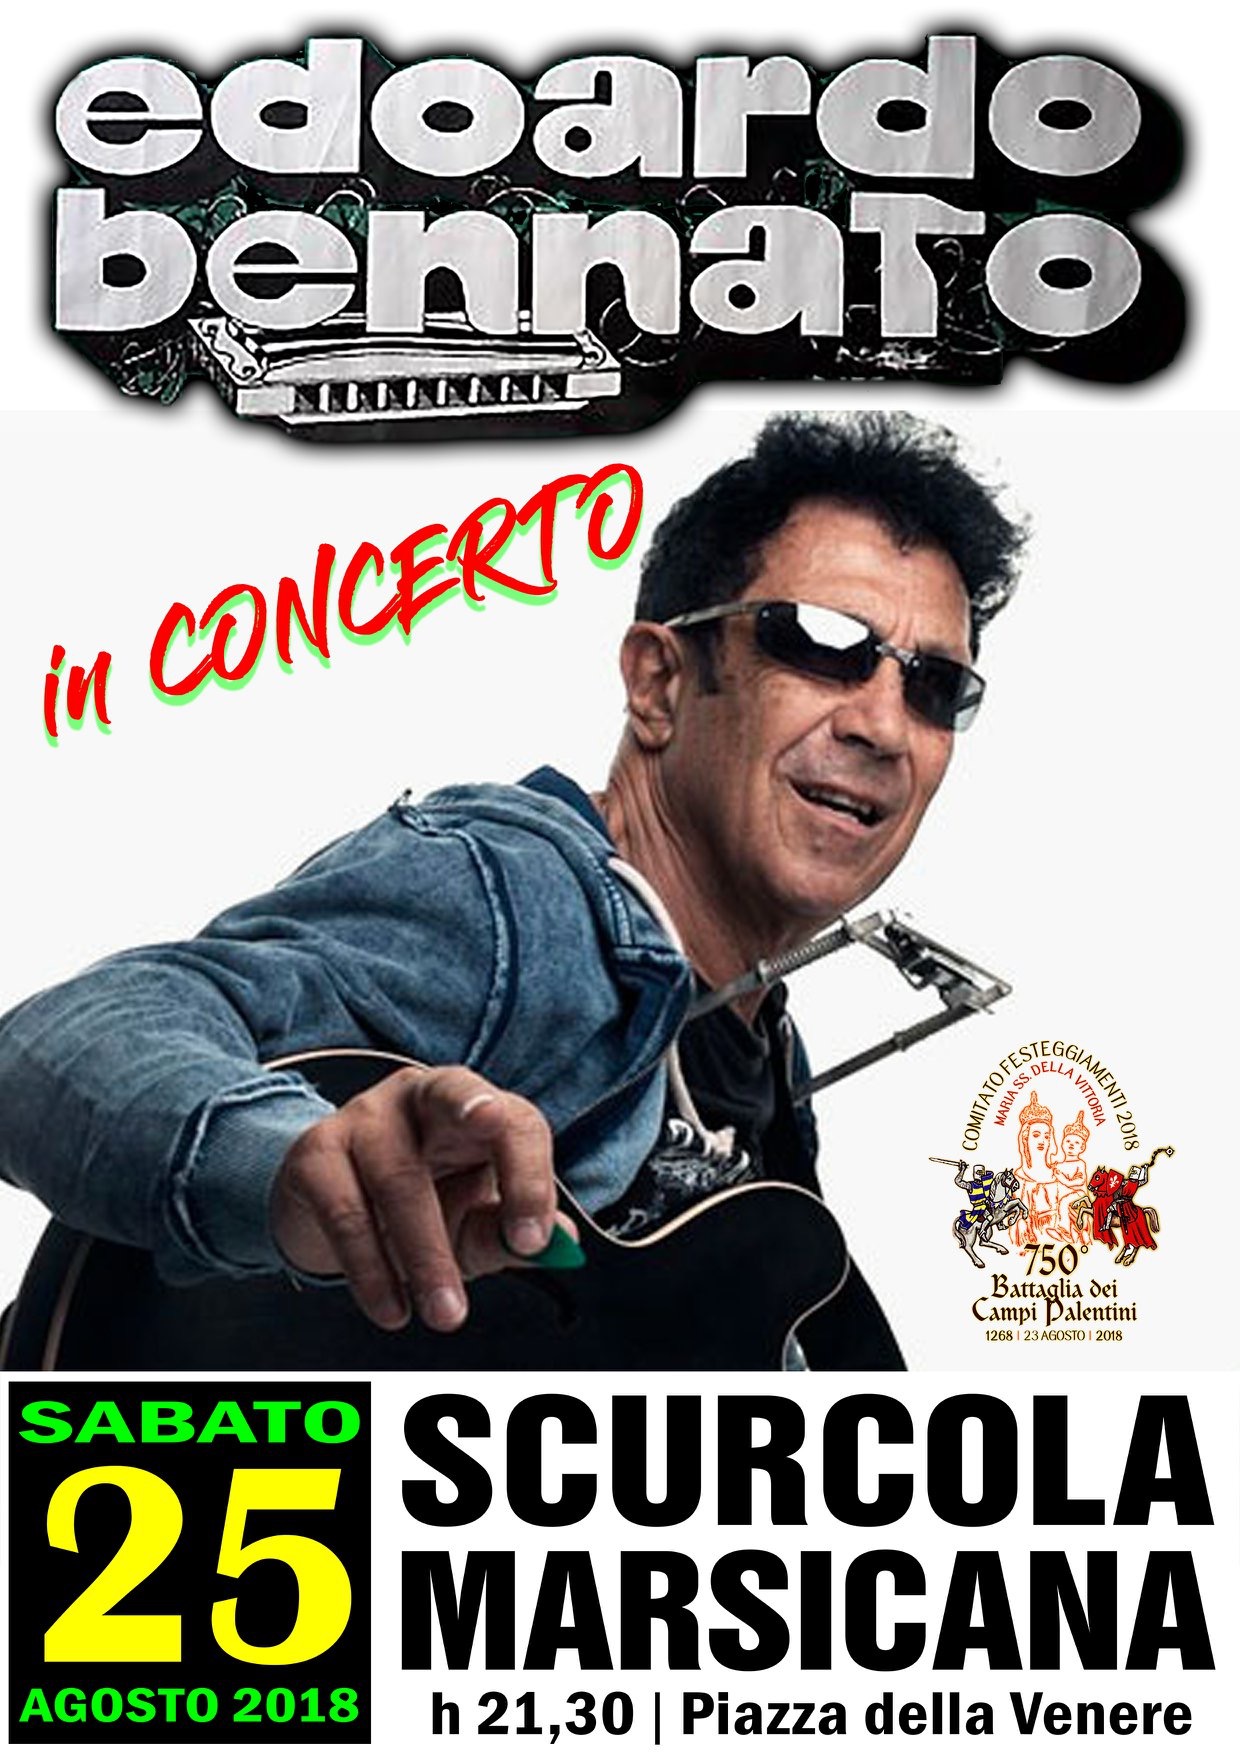 Edoardo Bennato in concerto a Scurcola Marsicana